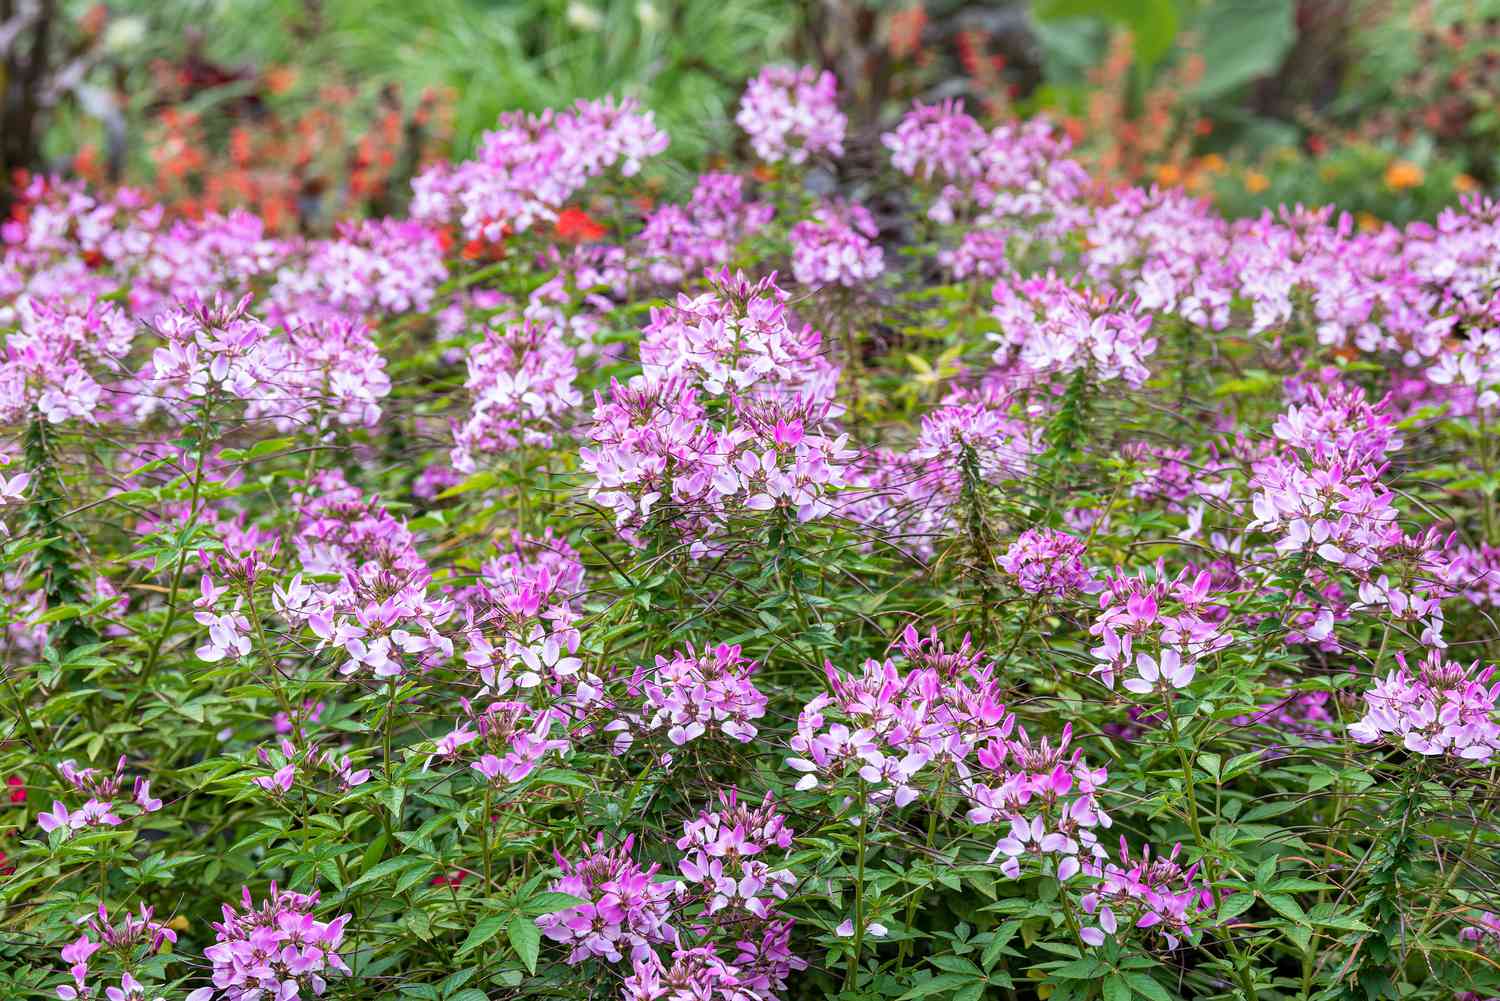 Cleome-Pflanze mit rosa Blütenbüscheln im Garten